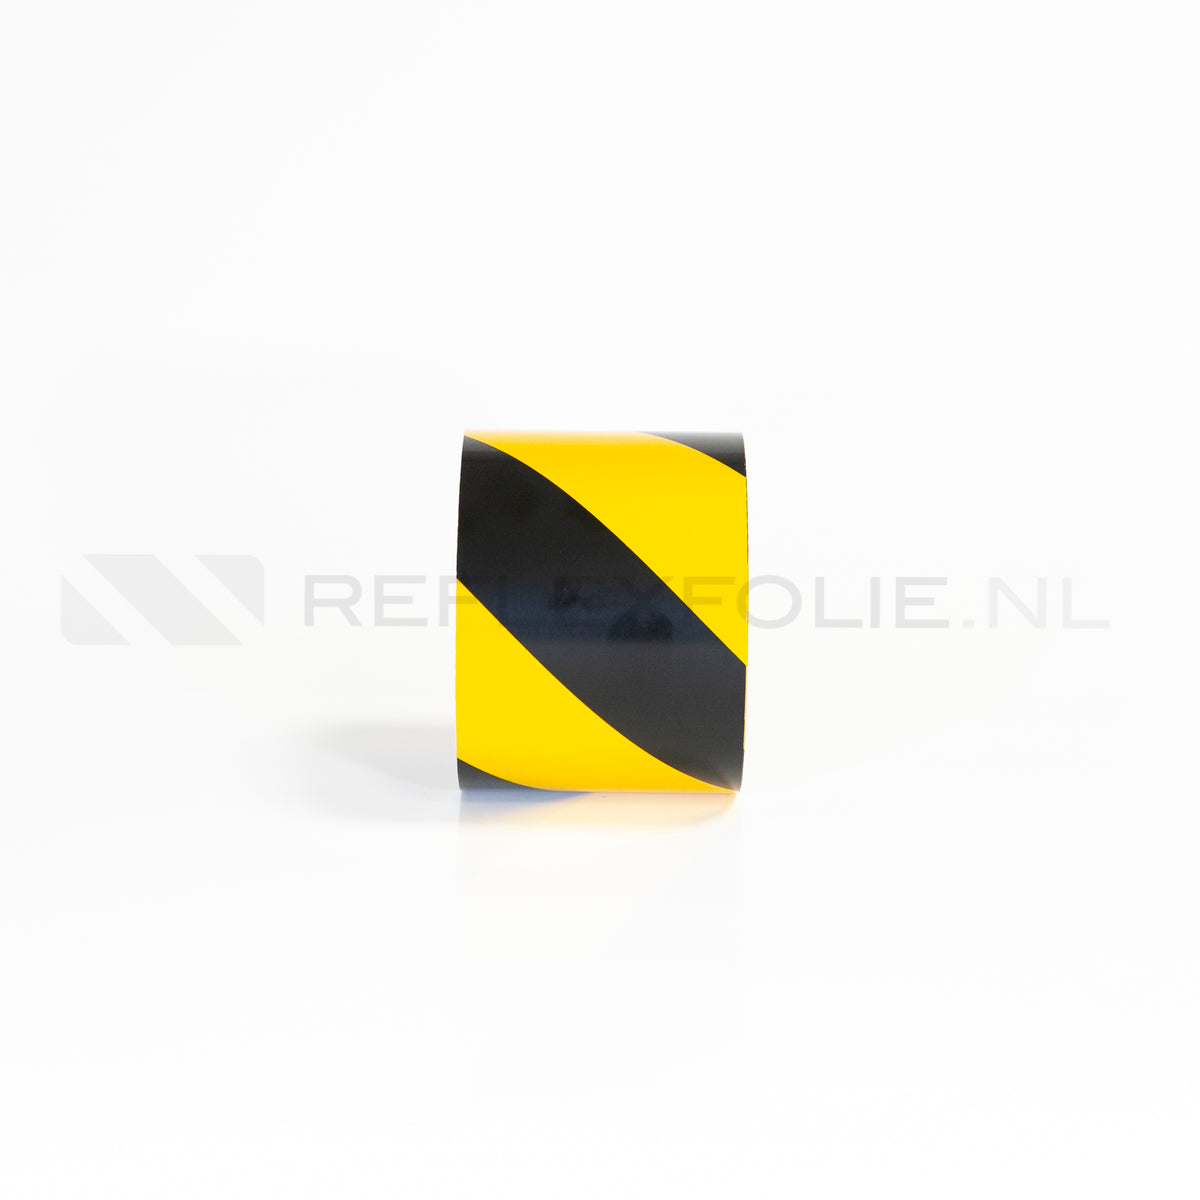 Markeringsband geel/zwart rechtswijzend 100 mm x 22,5 meter